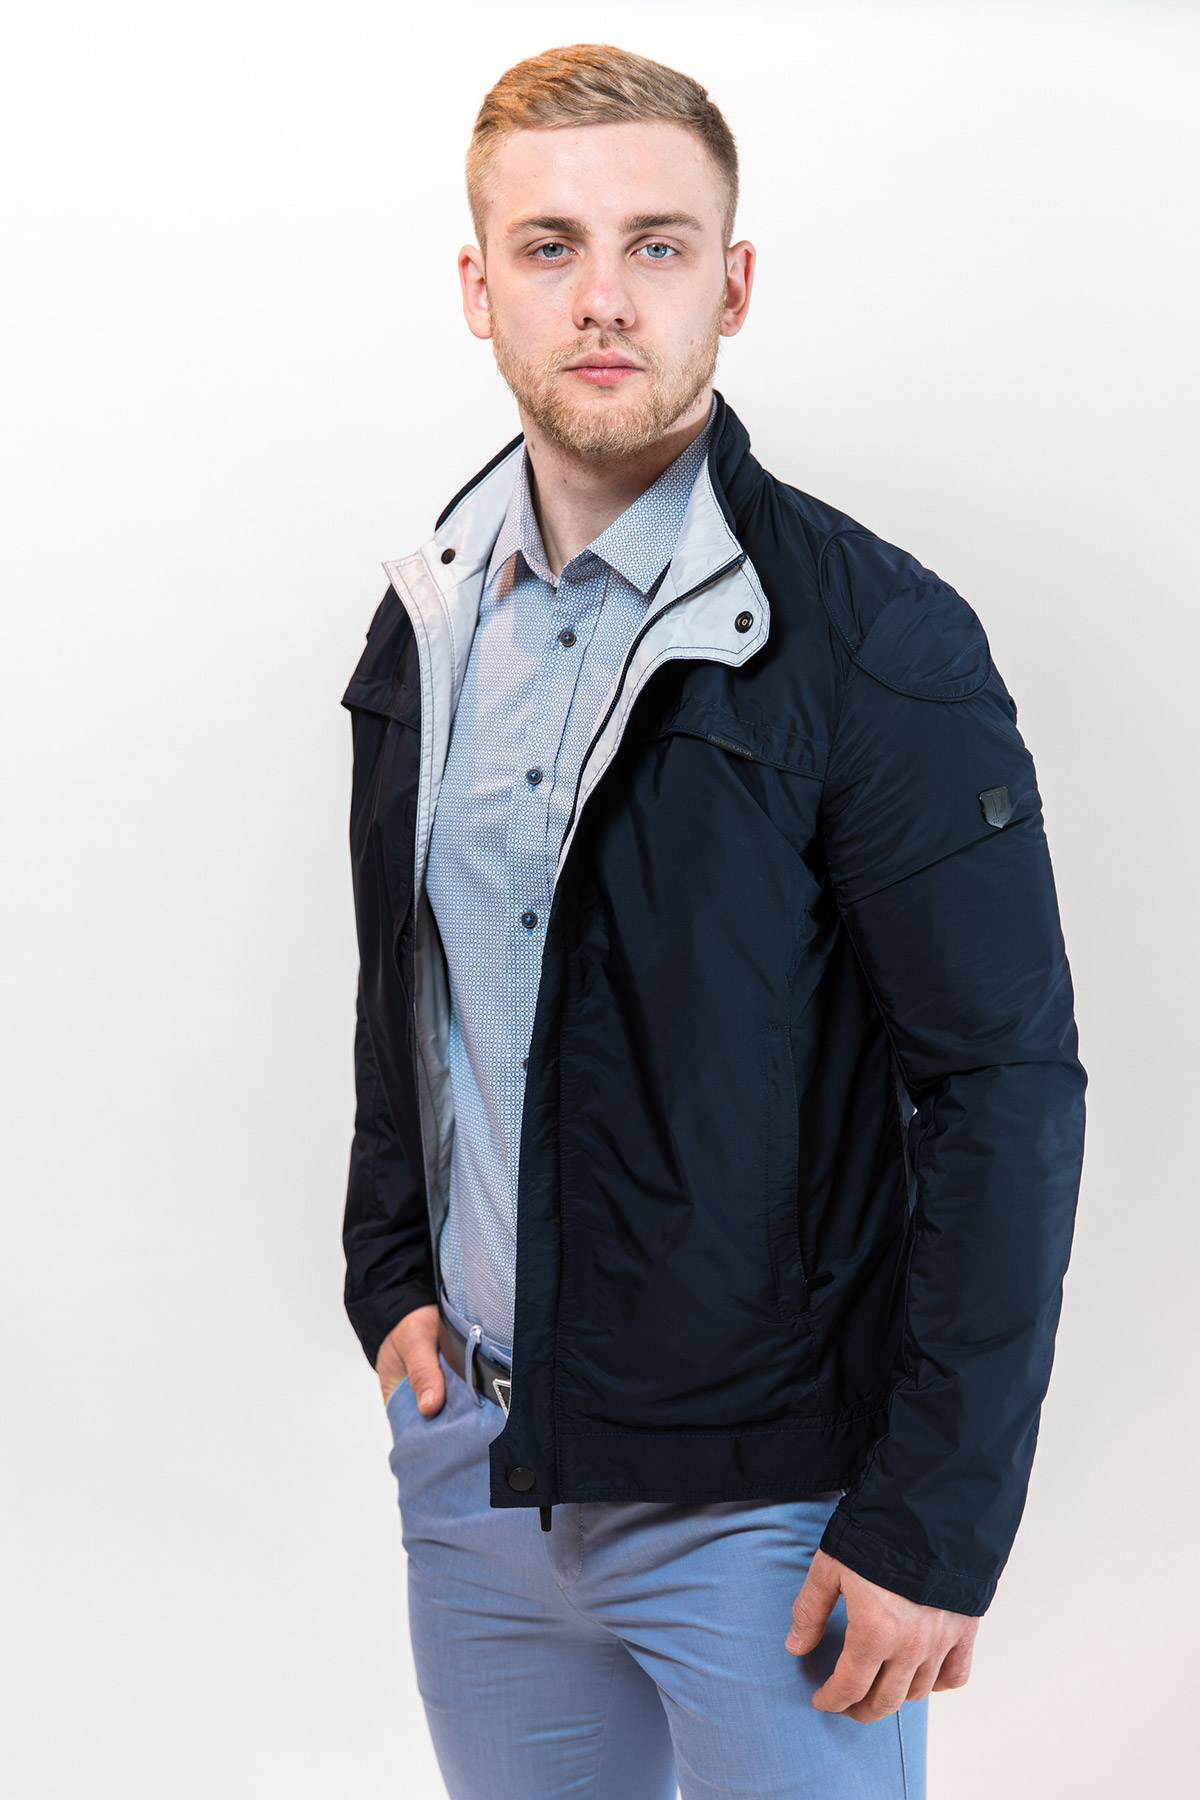 фото Демисезонная куртка мужская PLAXA арт. 5308-01 Цвет : т.синий со светлыми вставками по воротнику